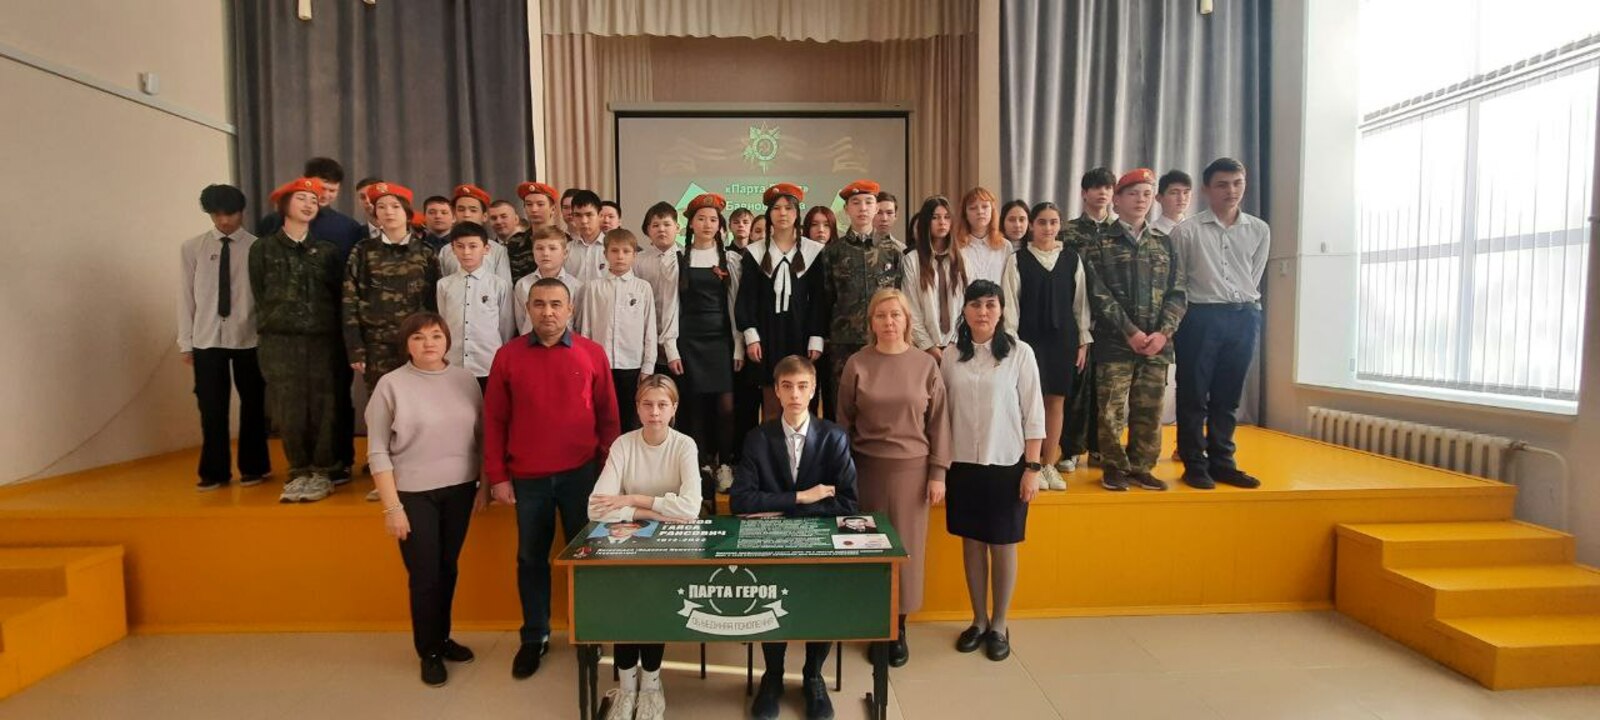 В сибайской школе открыли "Парту героя"